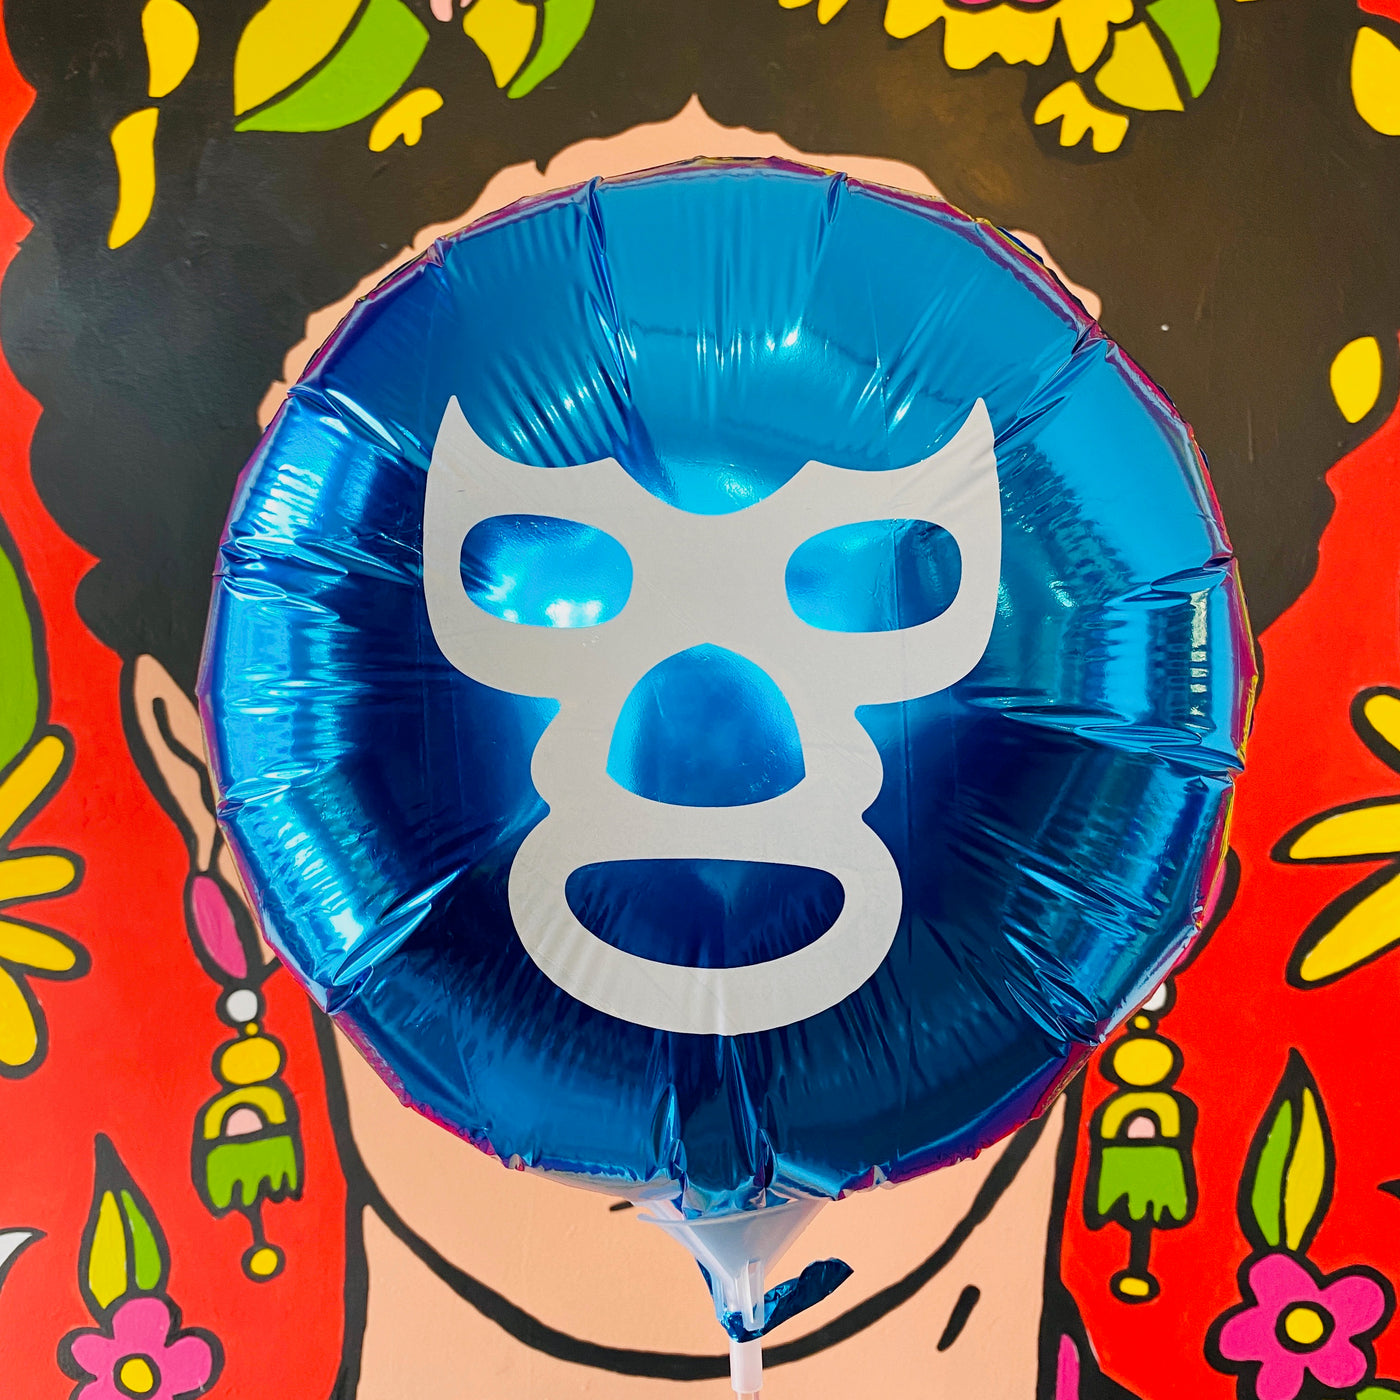 Blue circular Luchador balloon. White accent color on mask.